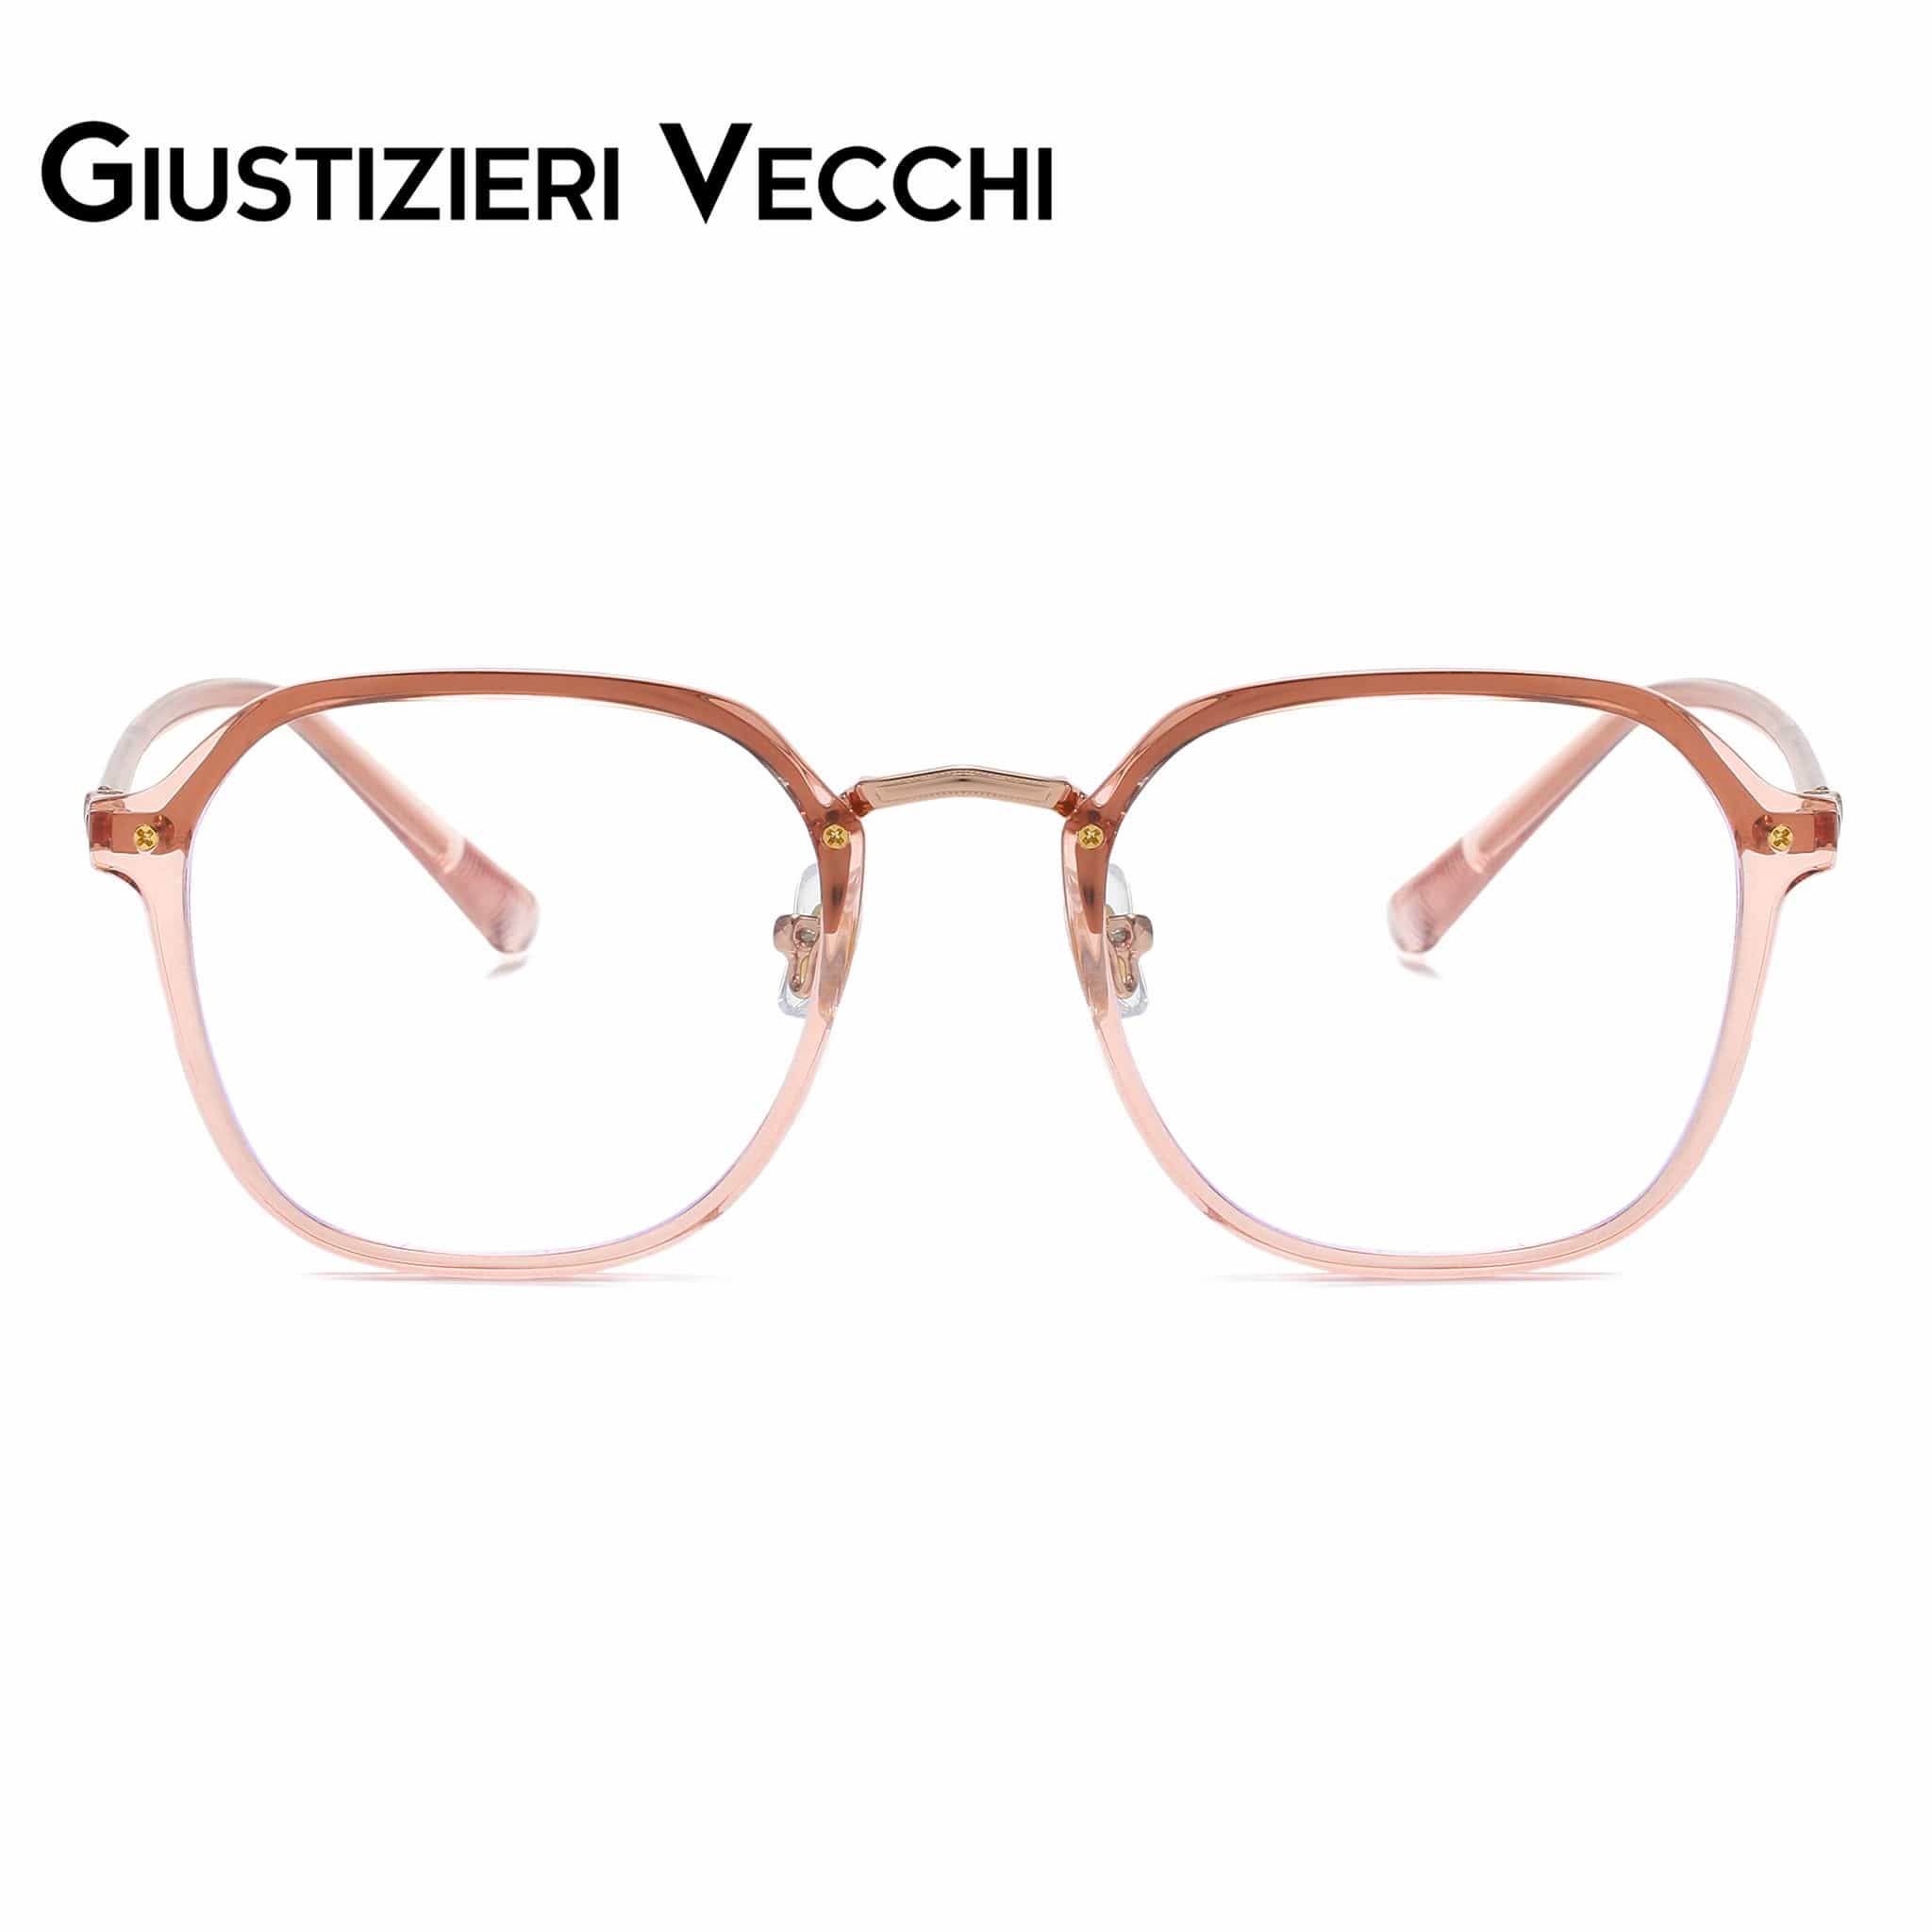 GIUSTIZIERI VECCHI Eyeglasses Small / Rose Crystal ModaChic Uno